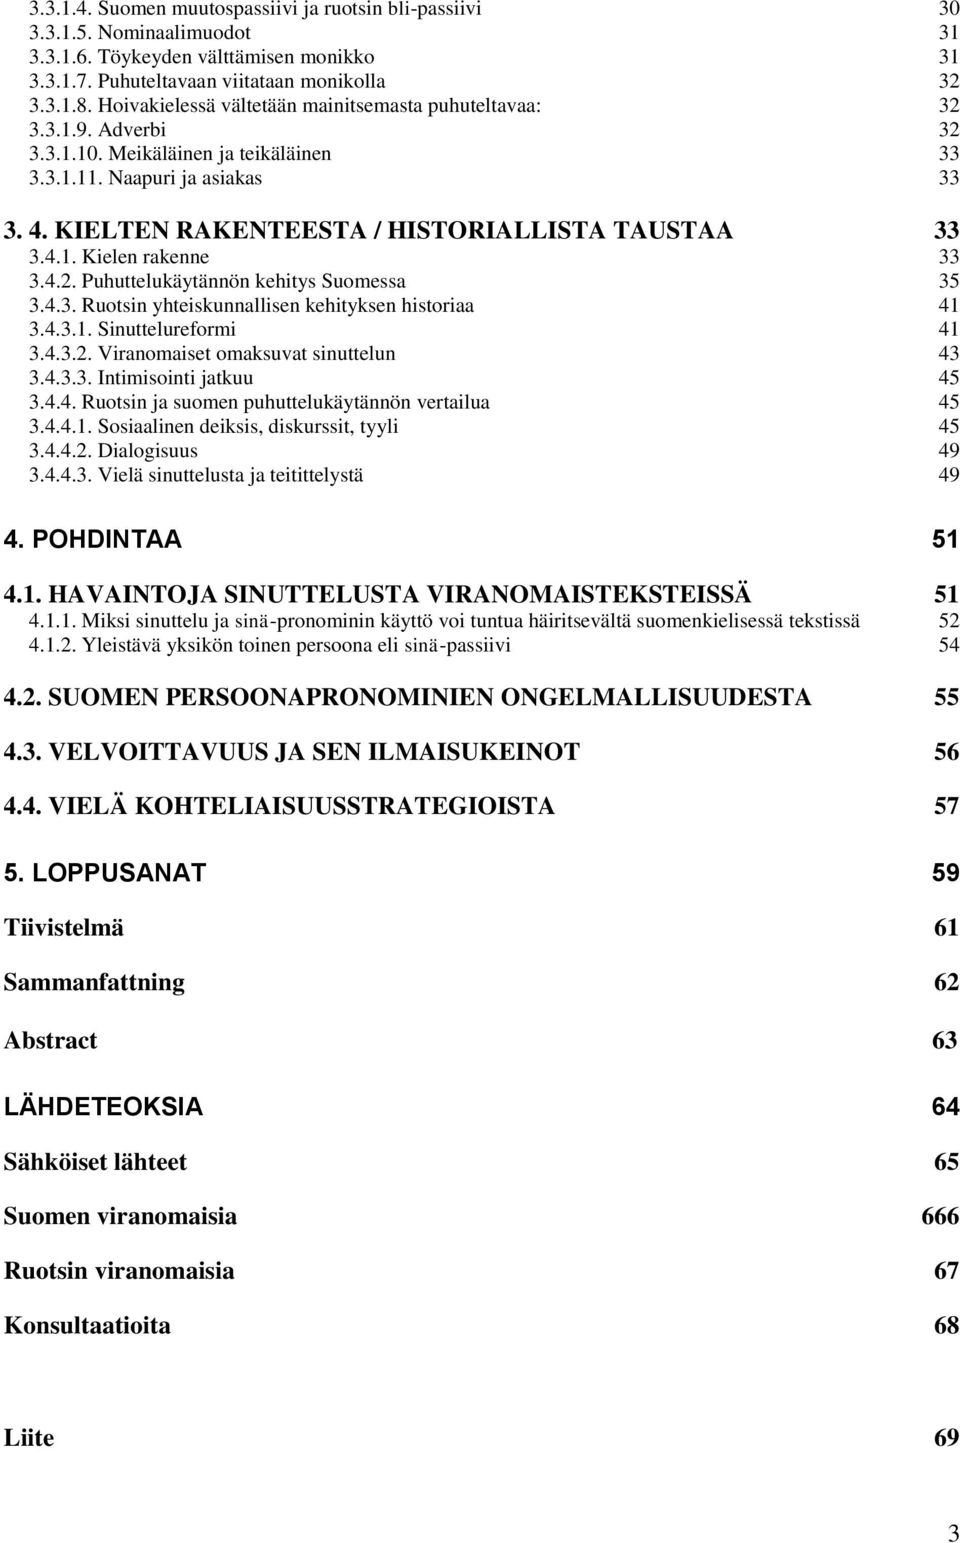 KIELTEN RAKENTEESTA / HISTORIALLISTA TAUSTAA 33 3.4.1. Kielen rakenne 33 3.4.2. Puhuttelukäytännön kehitys Suomessa 35 3.4.3. Ruotsin yhteiskunnallisen kehityksen historiaa 41 3.4.3.1. Sinuttelureformi 41 3.